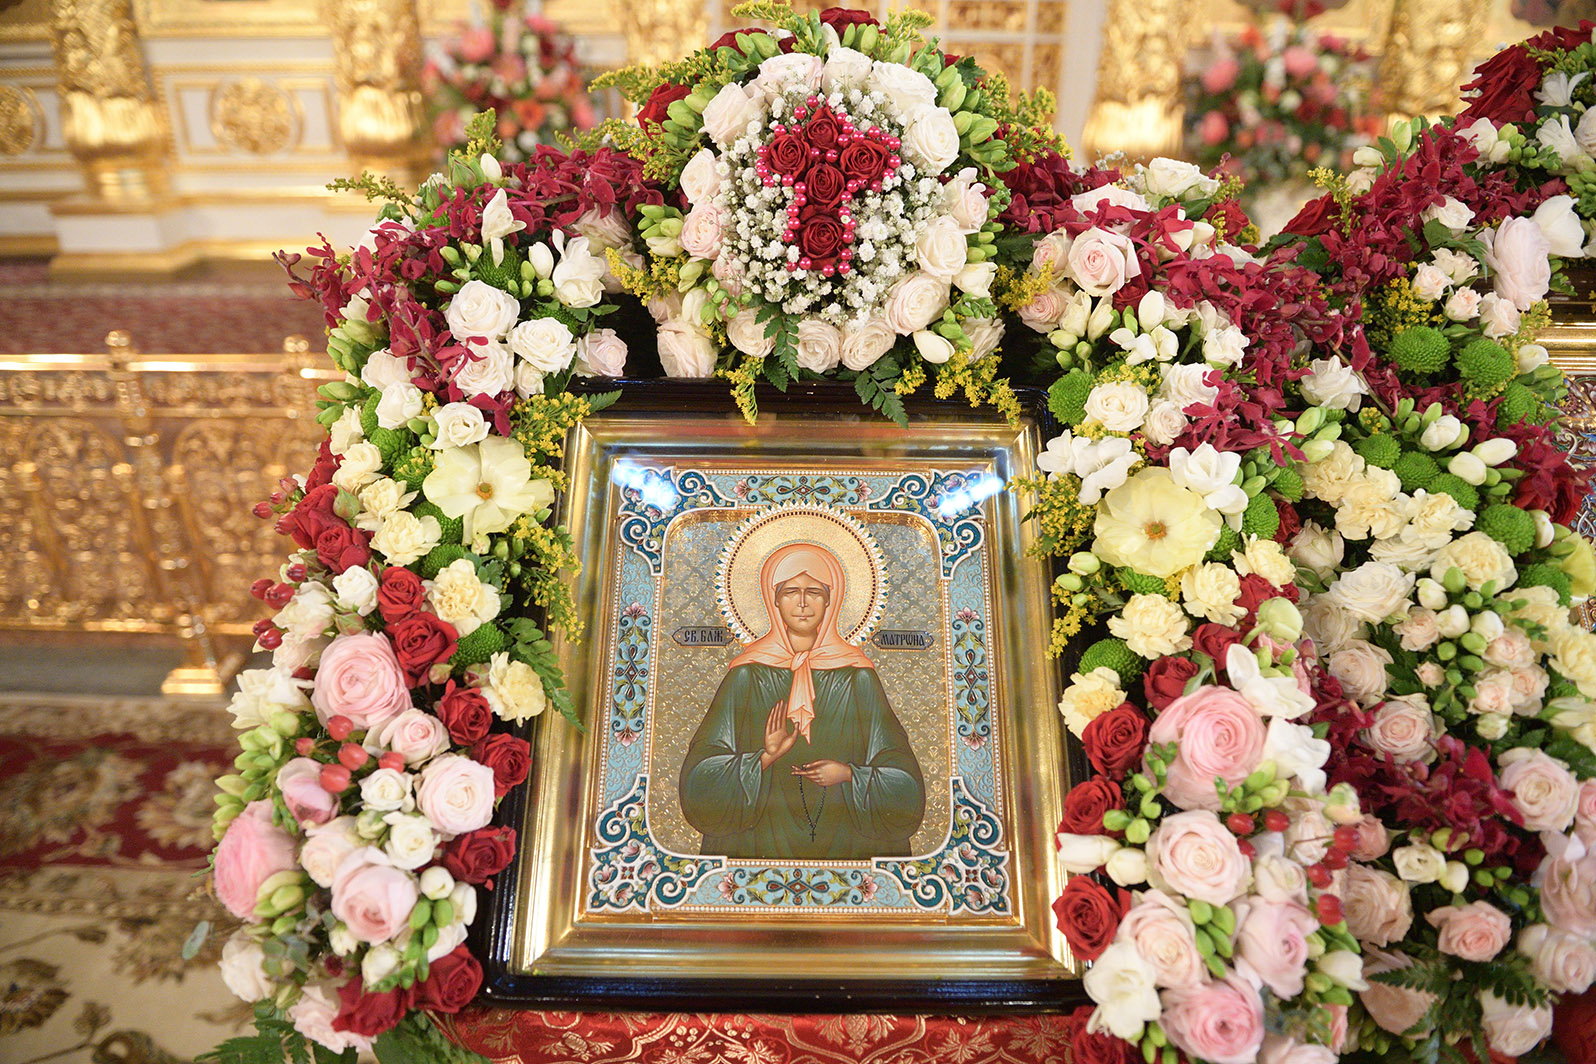 Дорогие братья и сестры! Празднование Дня канонизации святой праведной блаженной Матроны Московской переносится